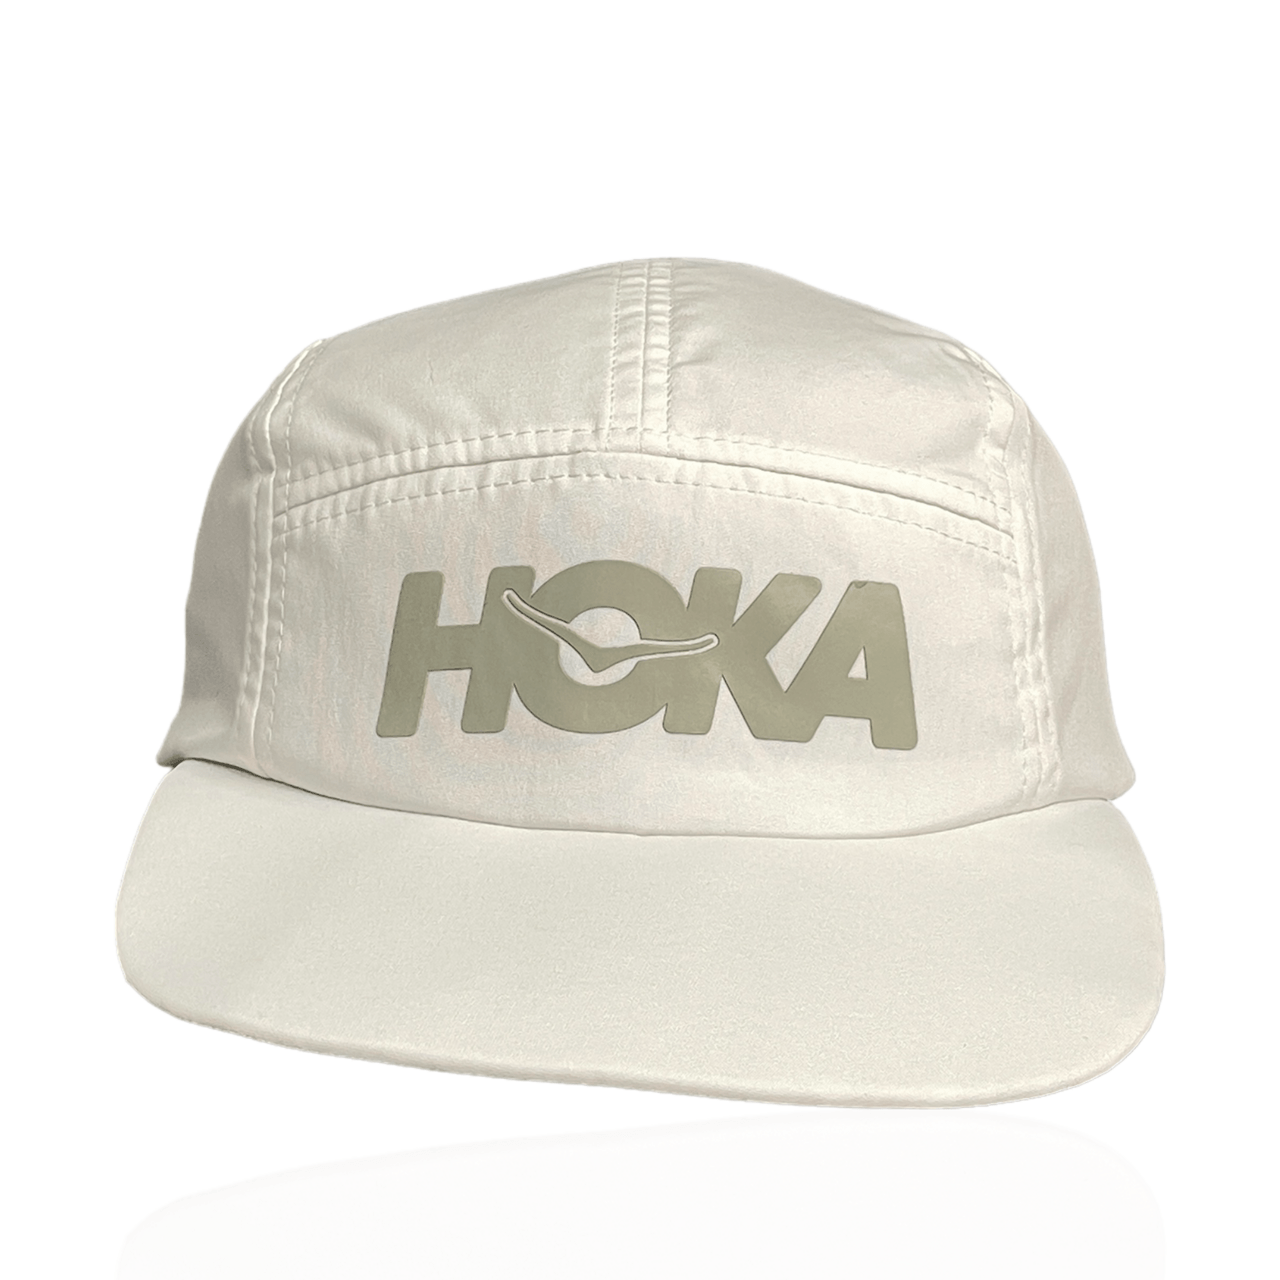 Hoka One one White Hats